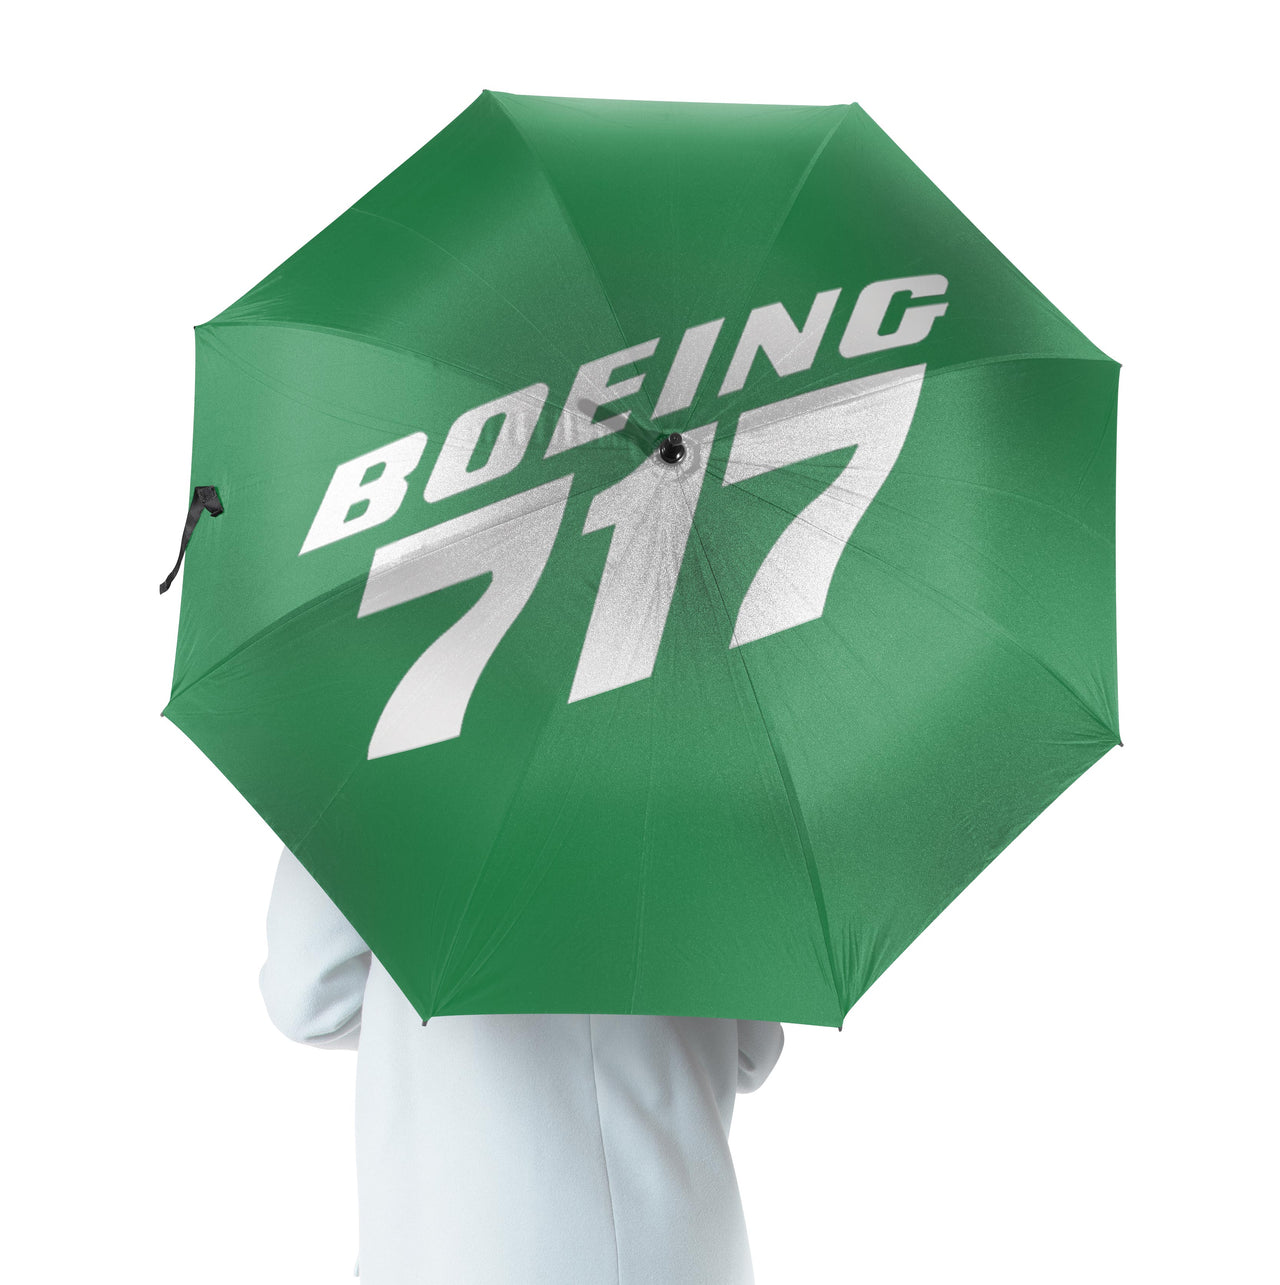 Boeing 717 & Text Designed Umbrella